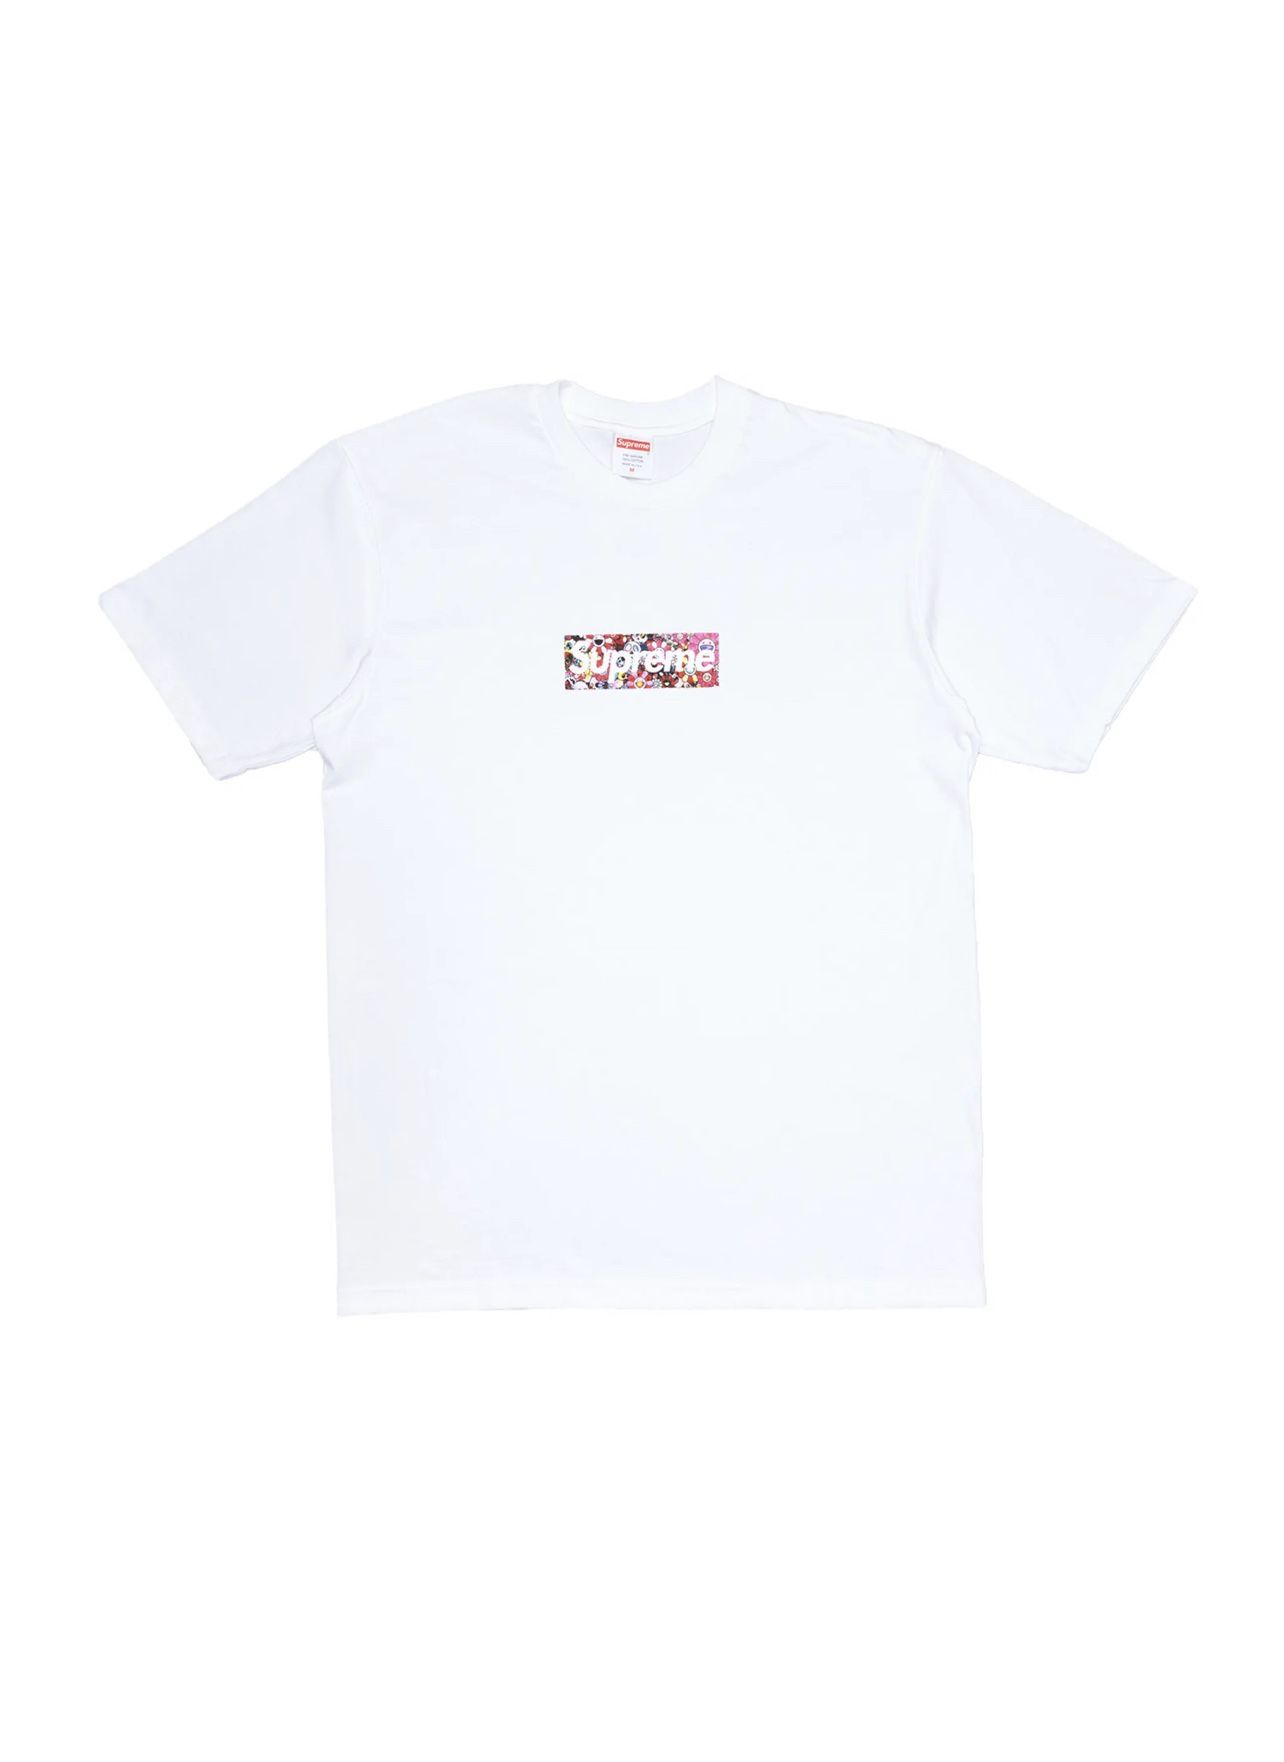 DS Supreme x Murakami Box Logo Tee “White” Size Medium